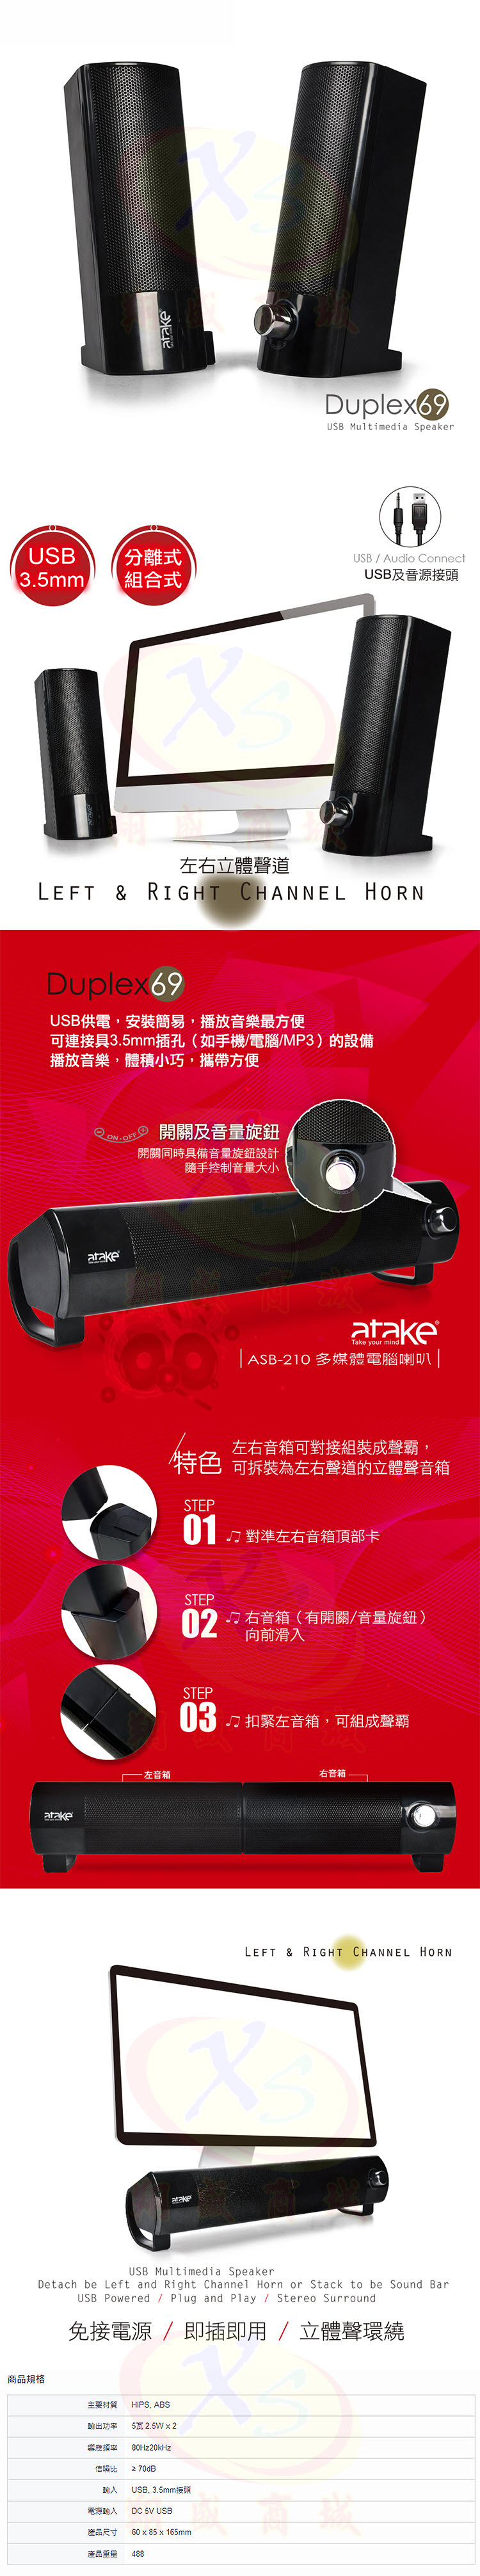 【ATake】ASB-210 電腦多媒體重低音立體聲環繞喇叭 桌上筆記型平板USB供電喇叭 電視二件式組合音箱 戶外音響